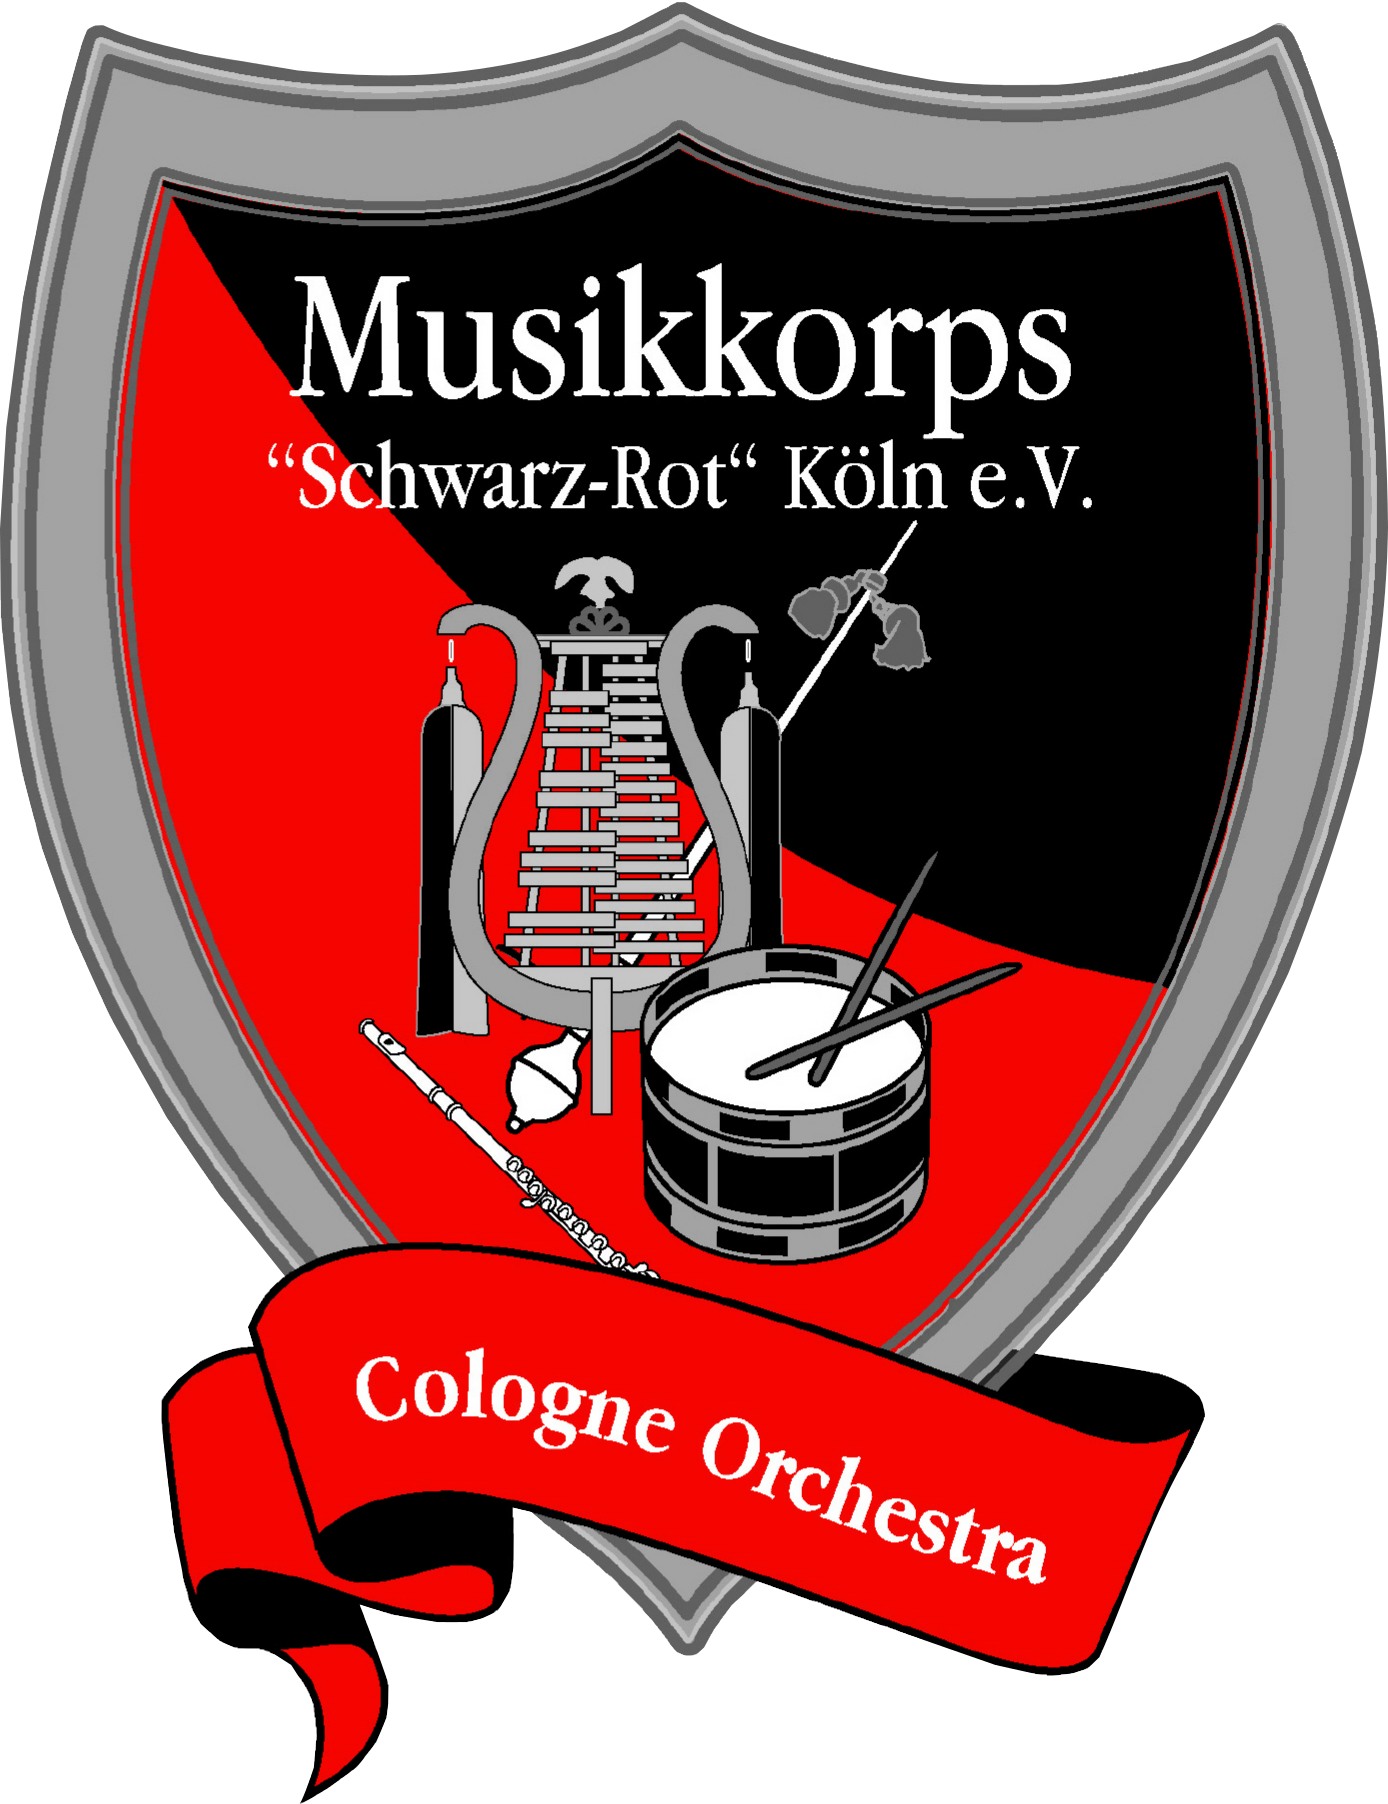 (c) Cologneorchestra.com